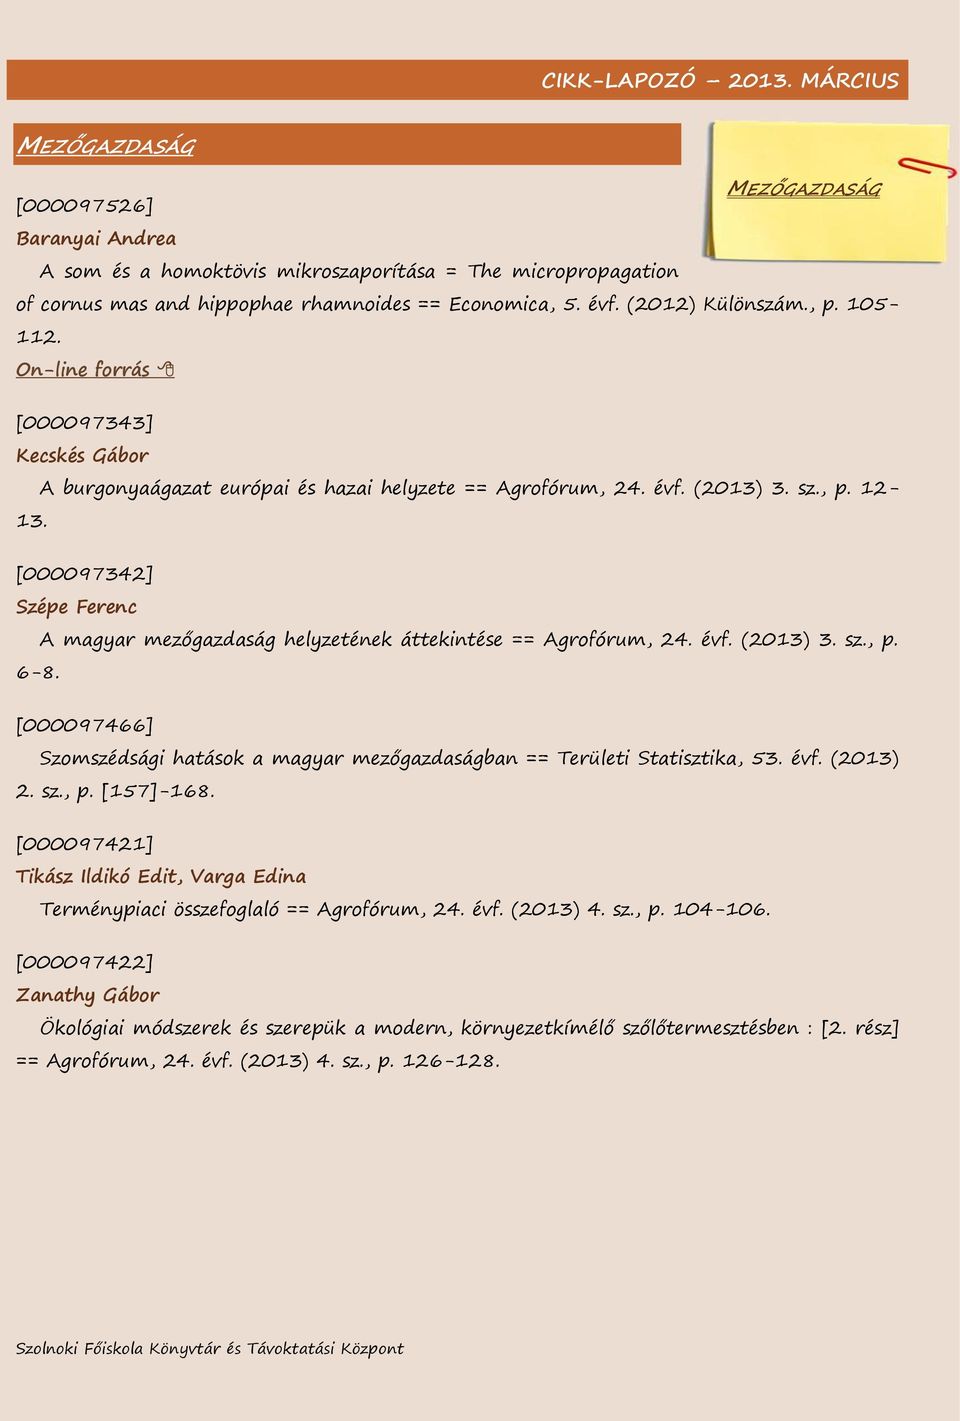 [000097342] Szépe Ferenc A magyar mezőgazdaság helyzetének áttekintése == Agrofórum, 24. évf. (2013) 3. sz., p. 6-8.